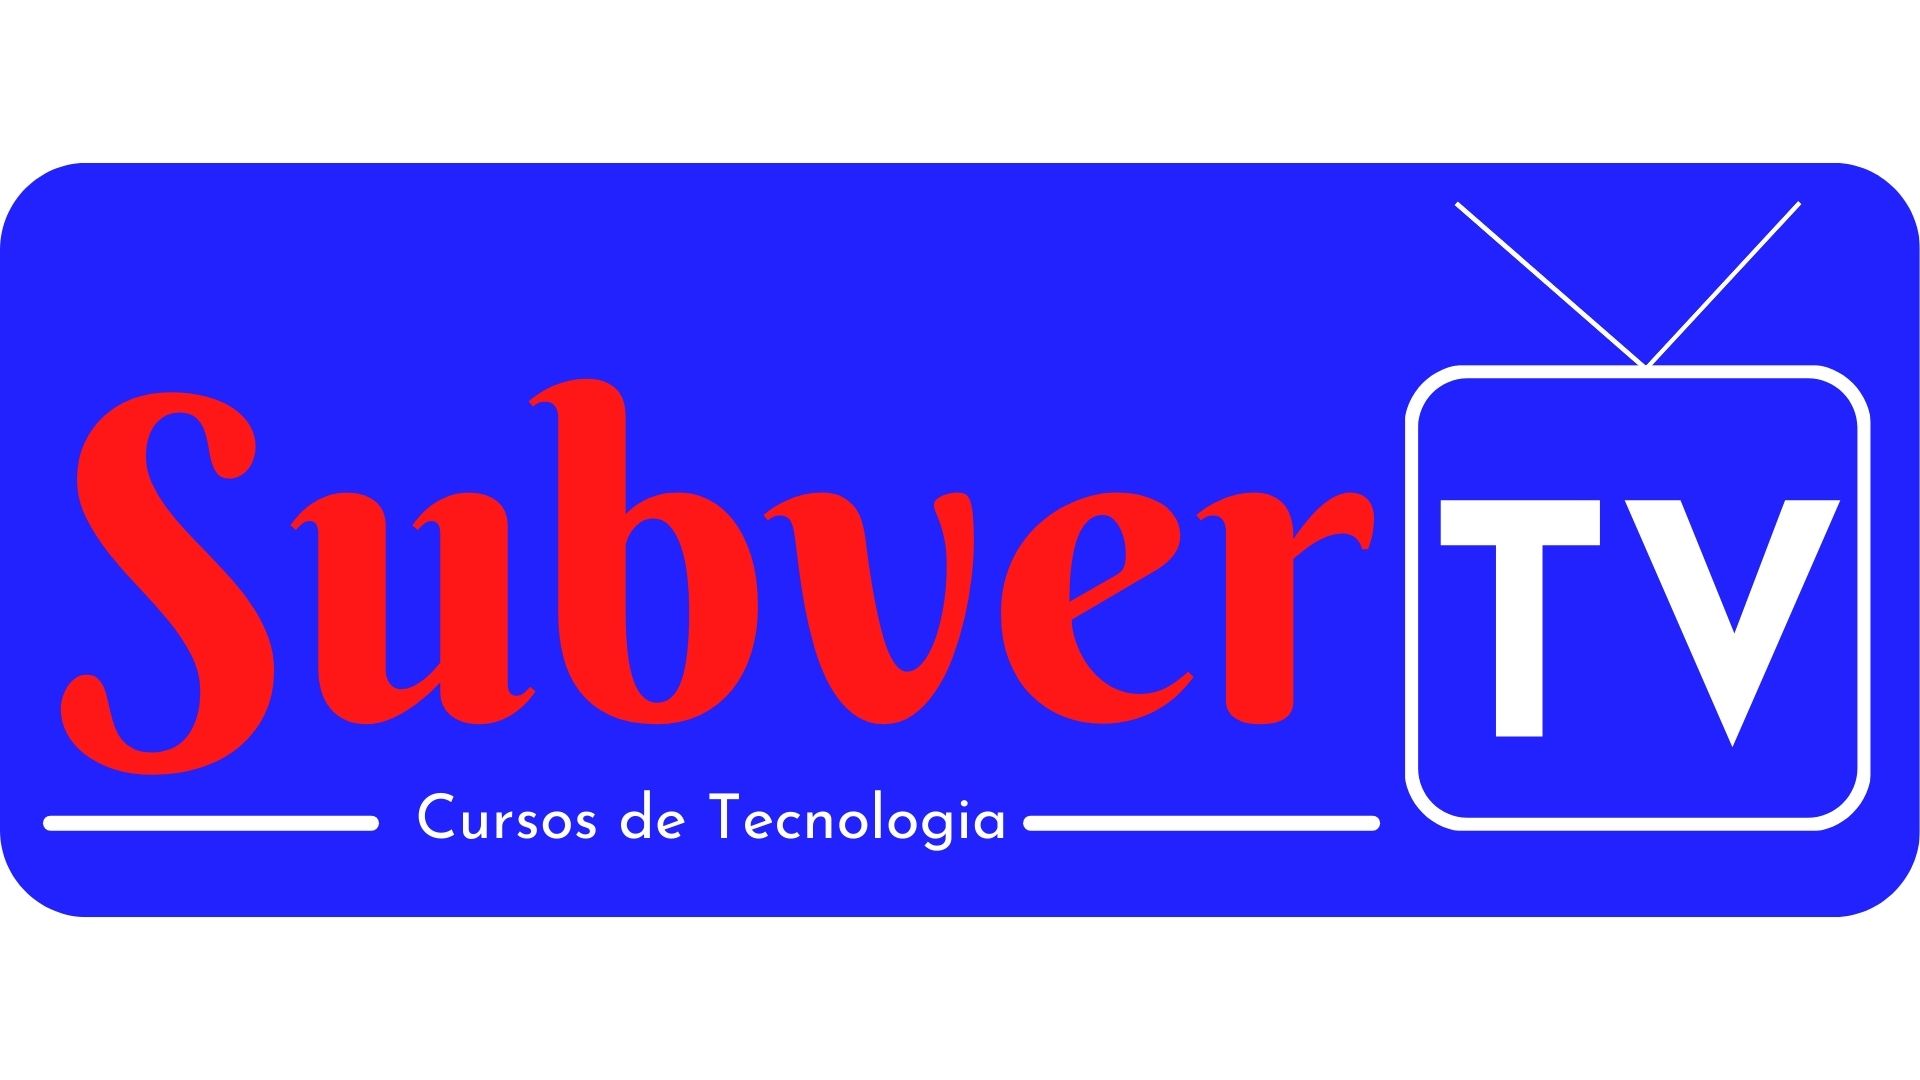 Essa imagem é a logo da Subvertv cursos de tecnologia